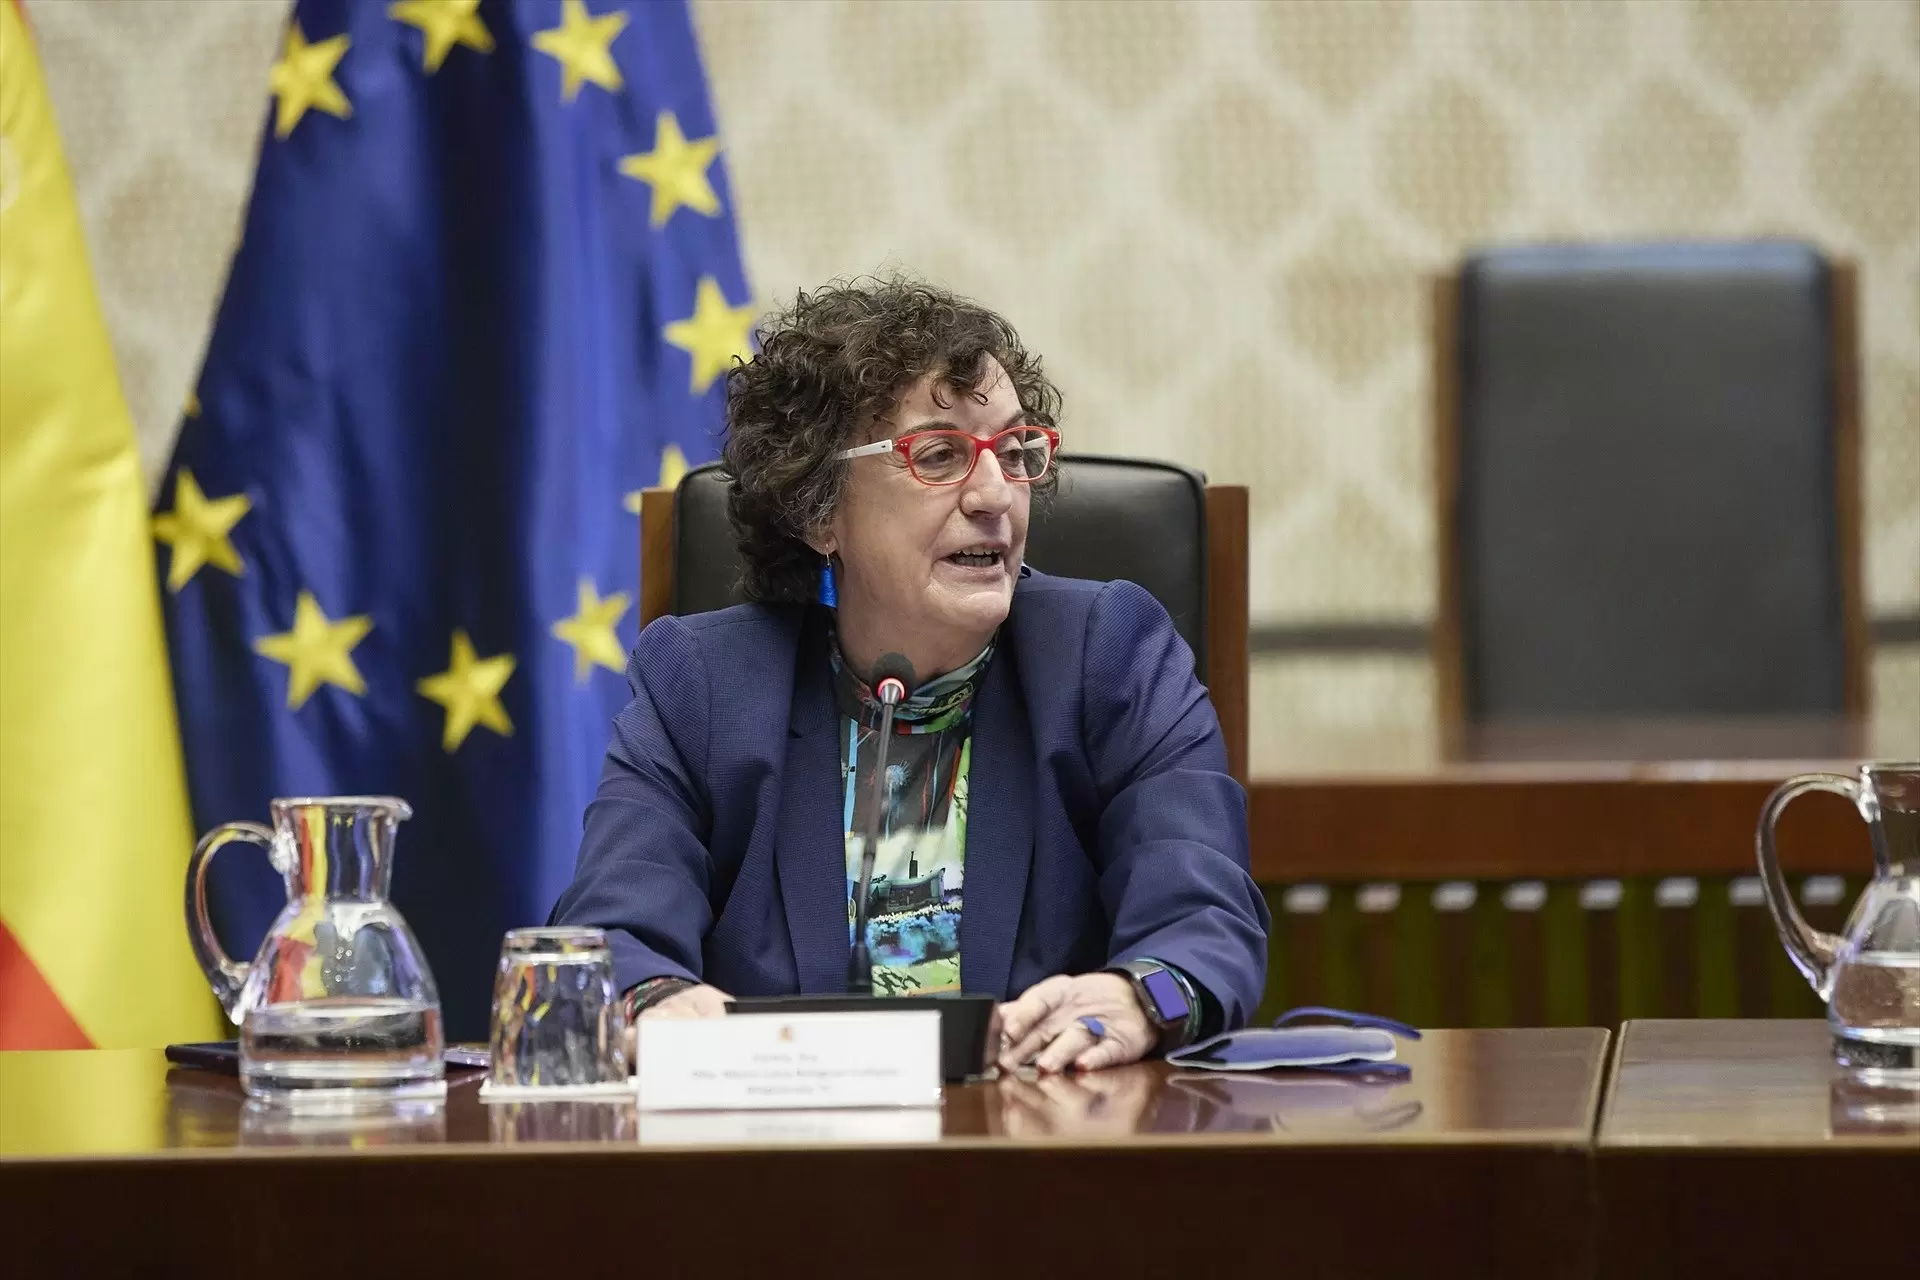 La magistrada del Constitucional María Luisa Balaguer interviene en un acto conmemorativo por el 8M, en el Tribunal Constitucional, el 8 de marzo de 2022. — Jesús Hellín / EUROPA PRESS